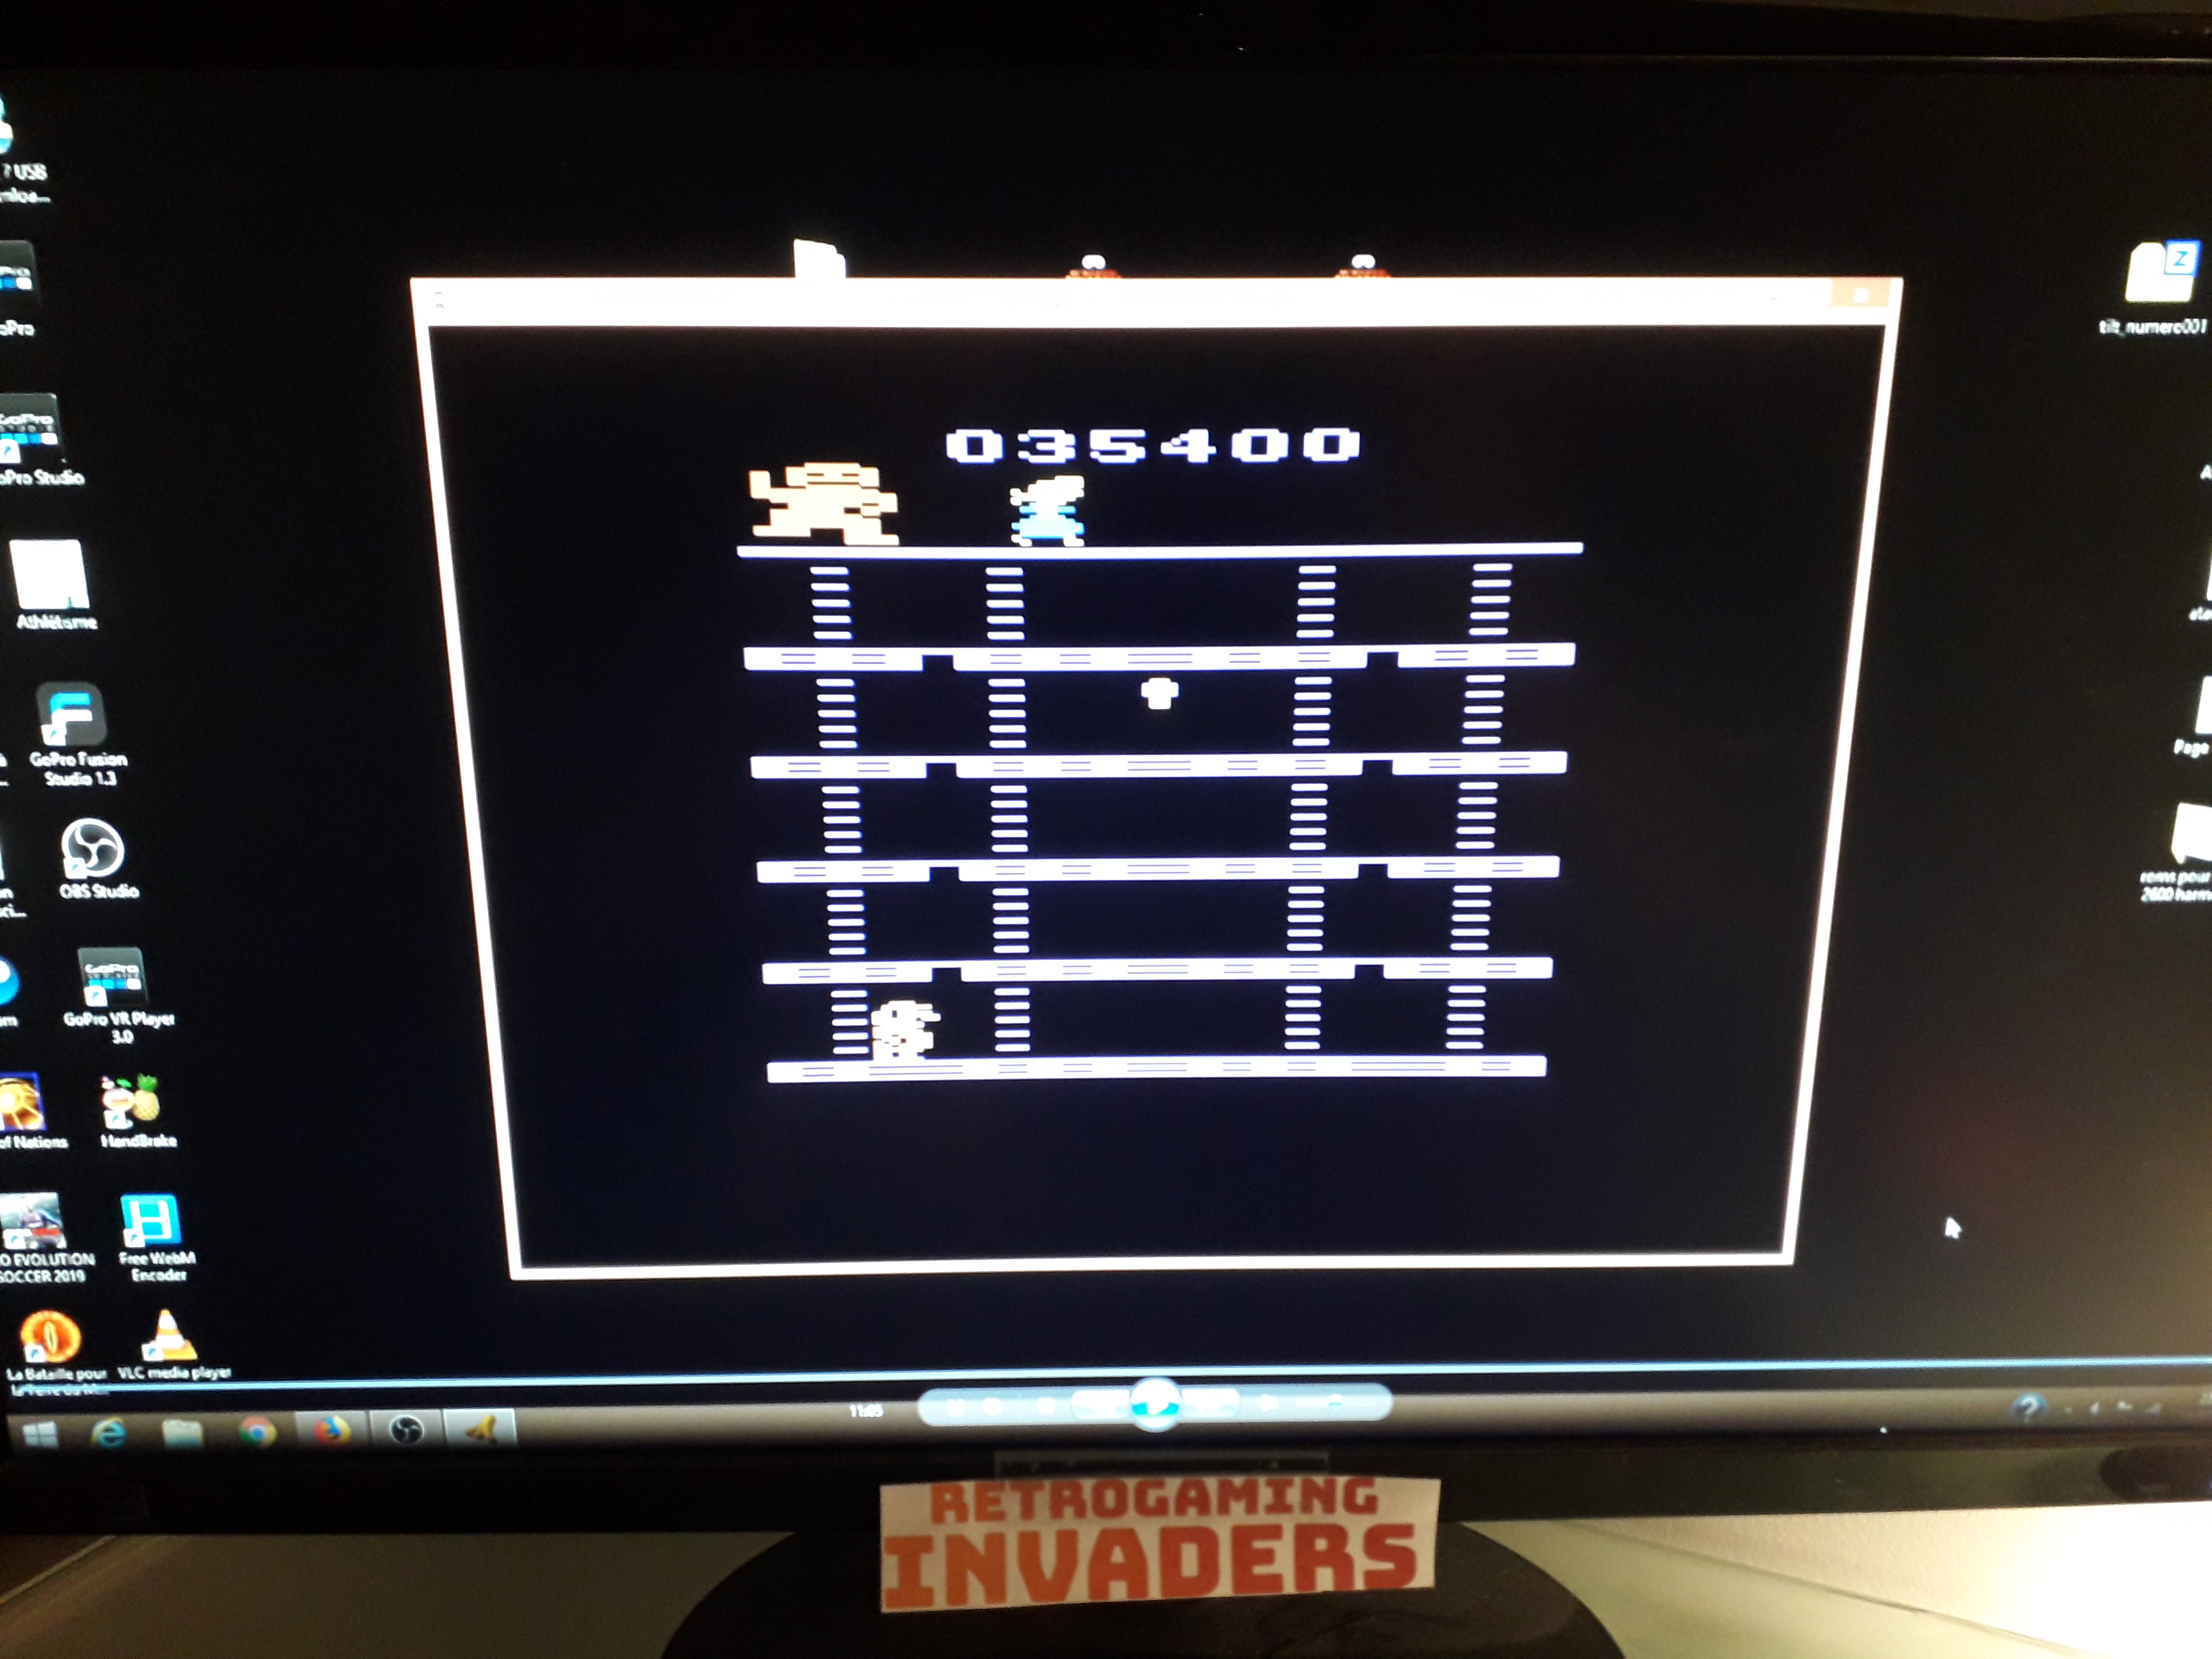 retrogaminginvaders: Donkey Kong (Atari 2600 Emulated Novice/B Mode) 35,400 points on 2019-07-14 15:14:58